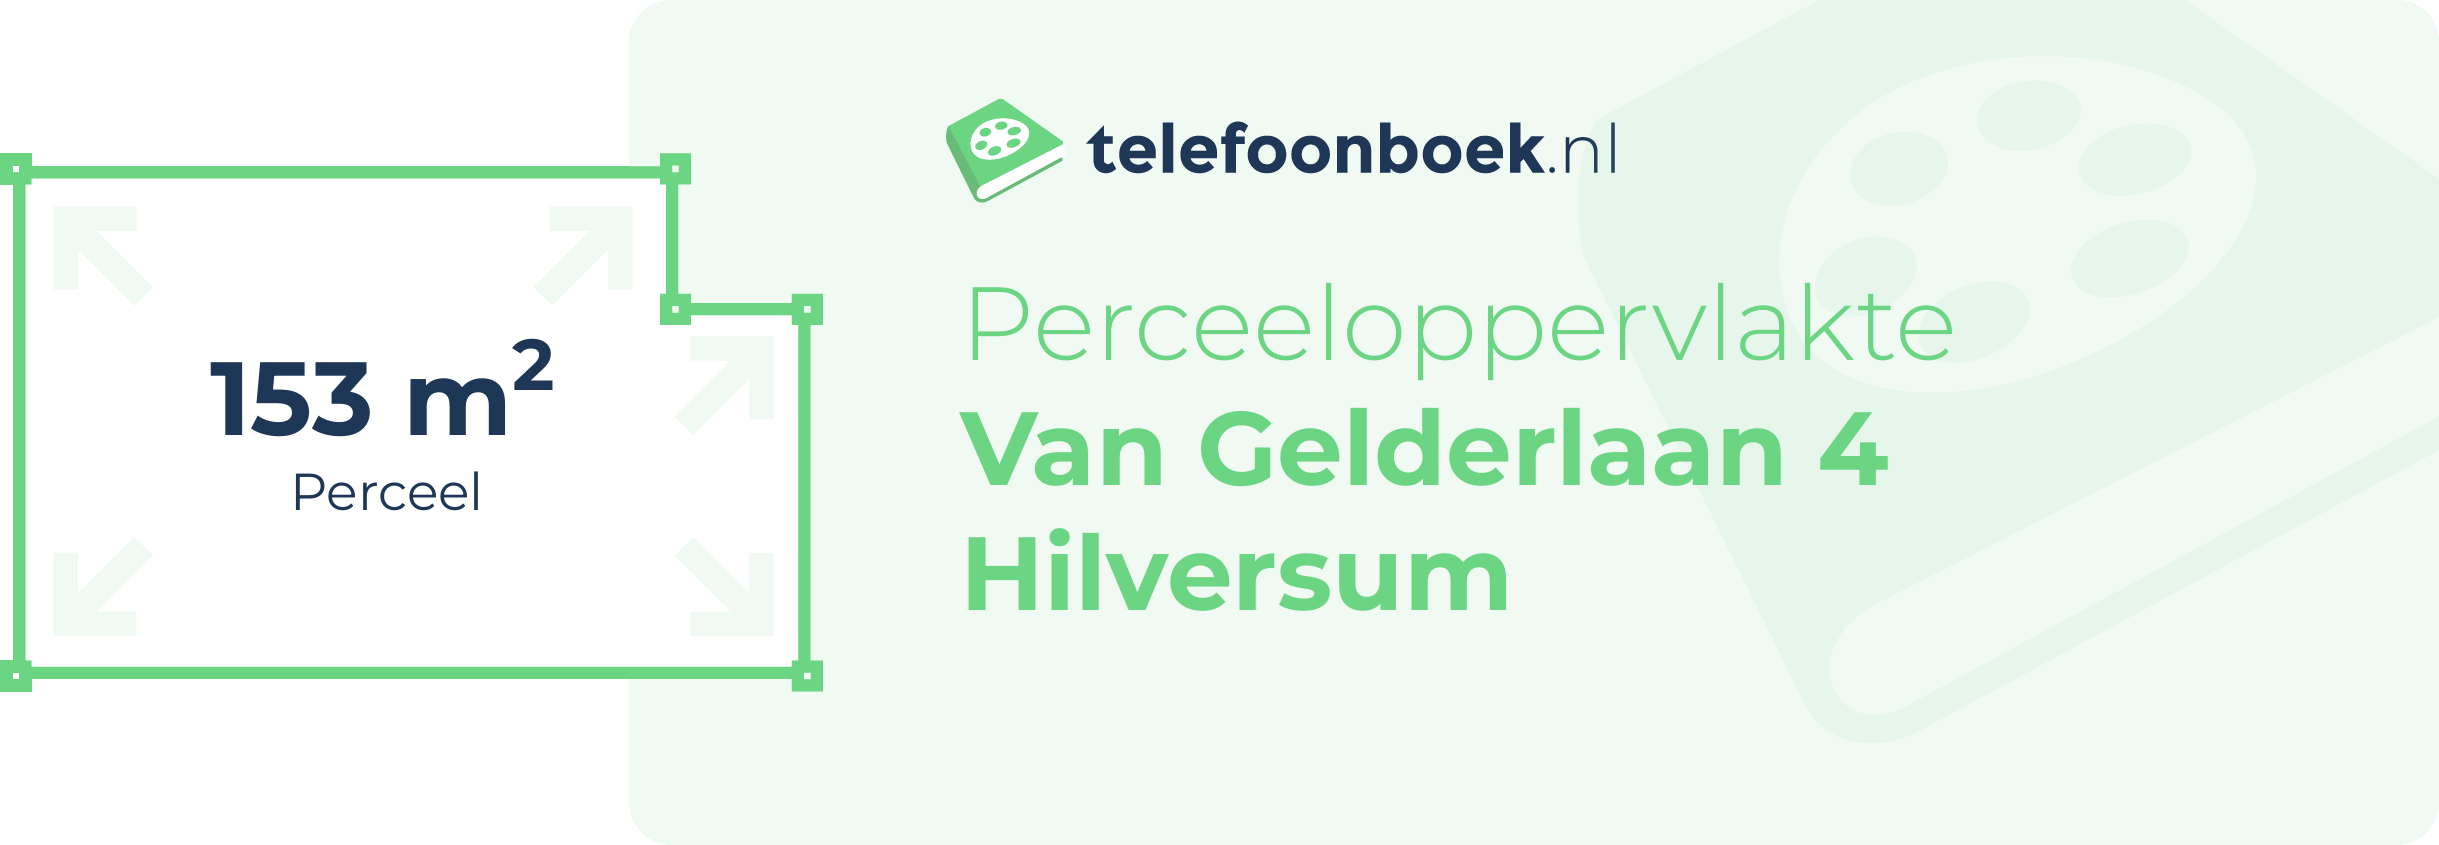 Perceeloppervlakte Van Gelderlaan 4 Hilversum